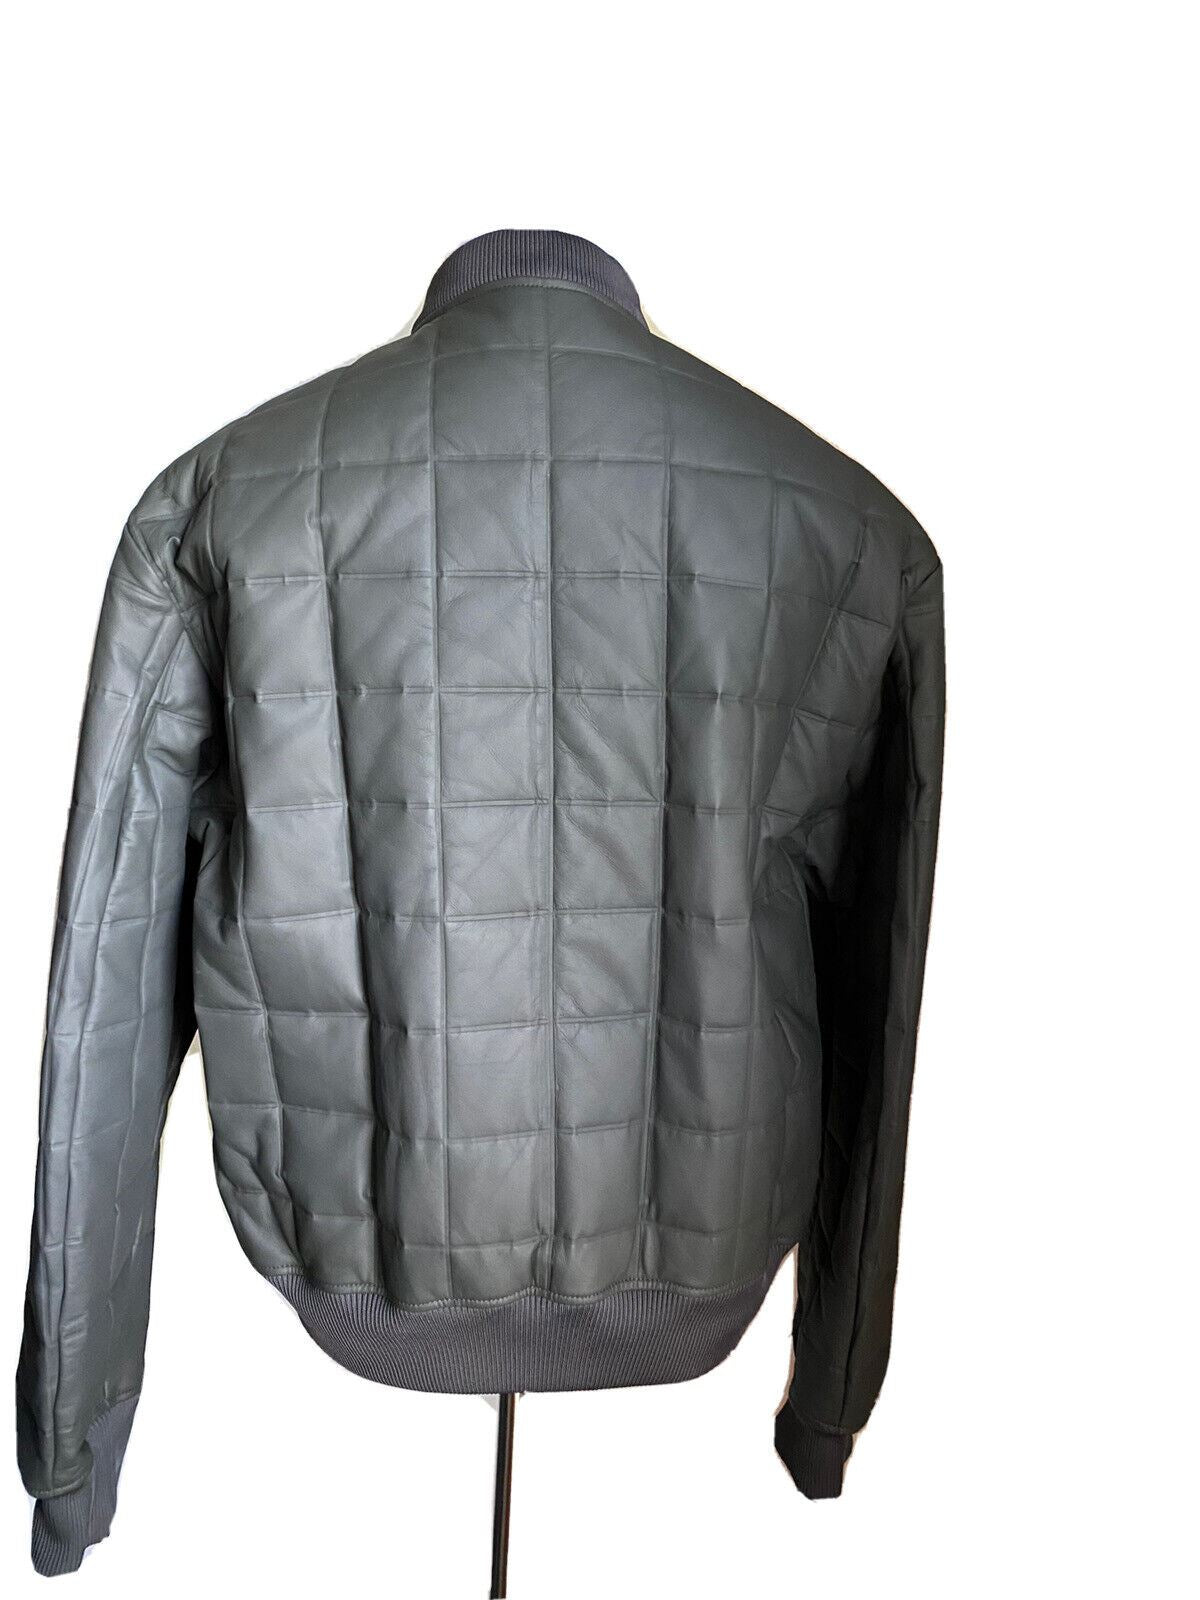 Новая мужская легкая кожаная куртка Bottega Veneta за 6700 долларов 44 США/54 ЕС